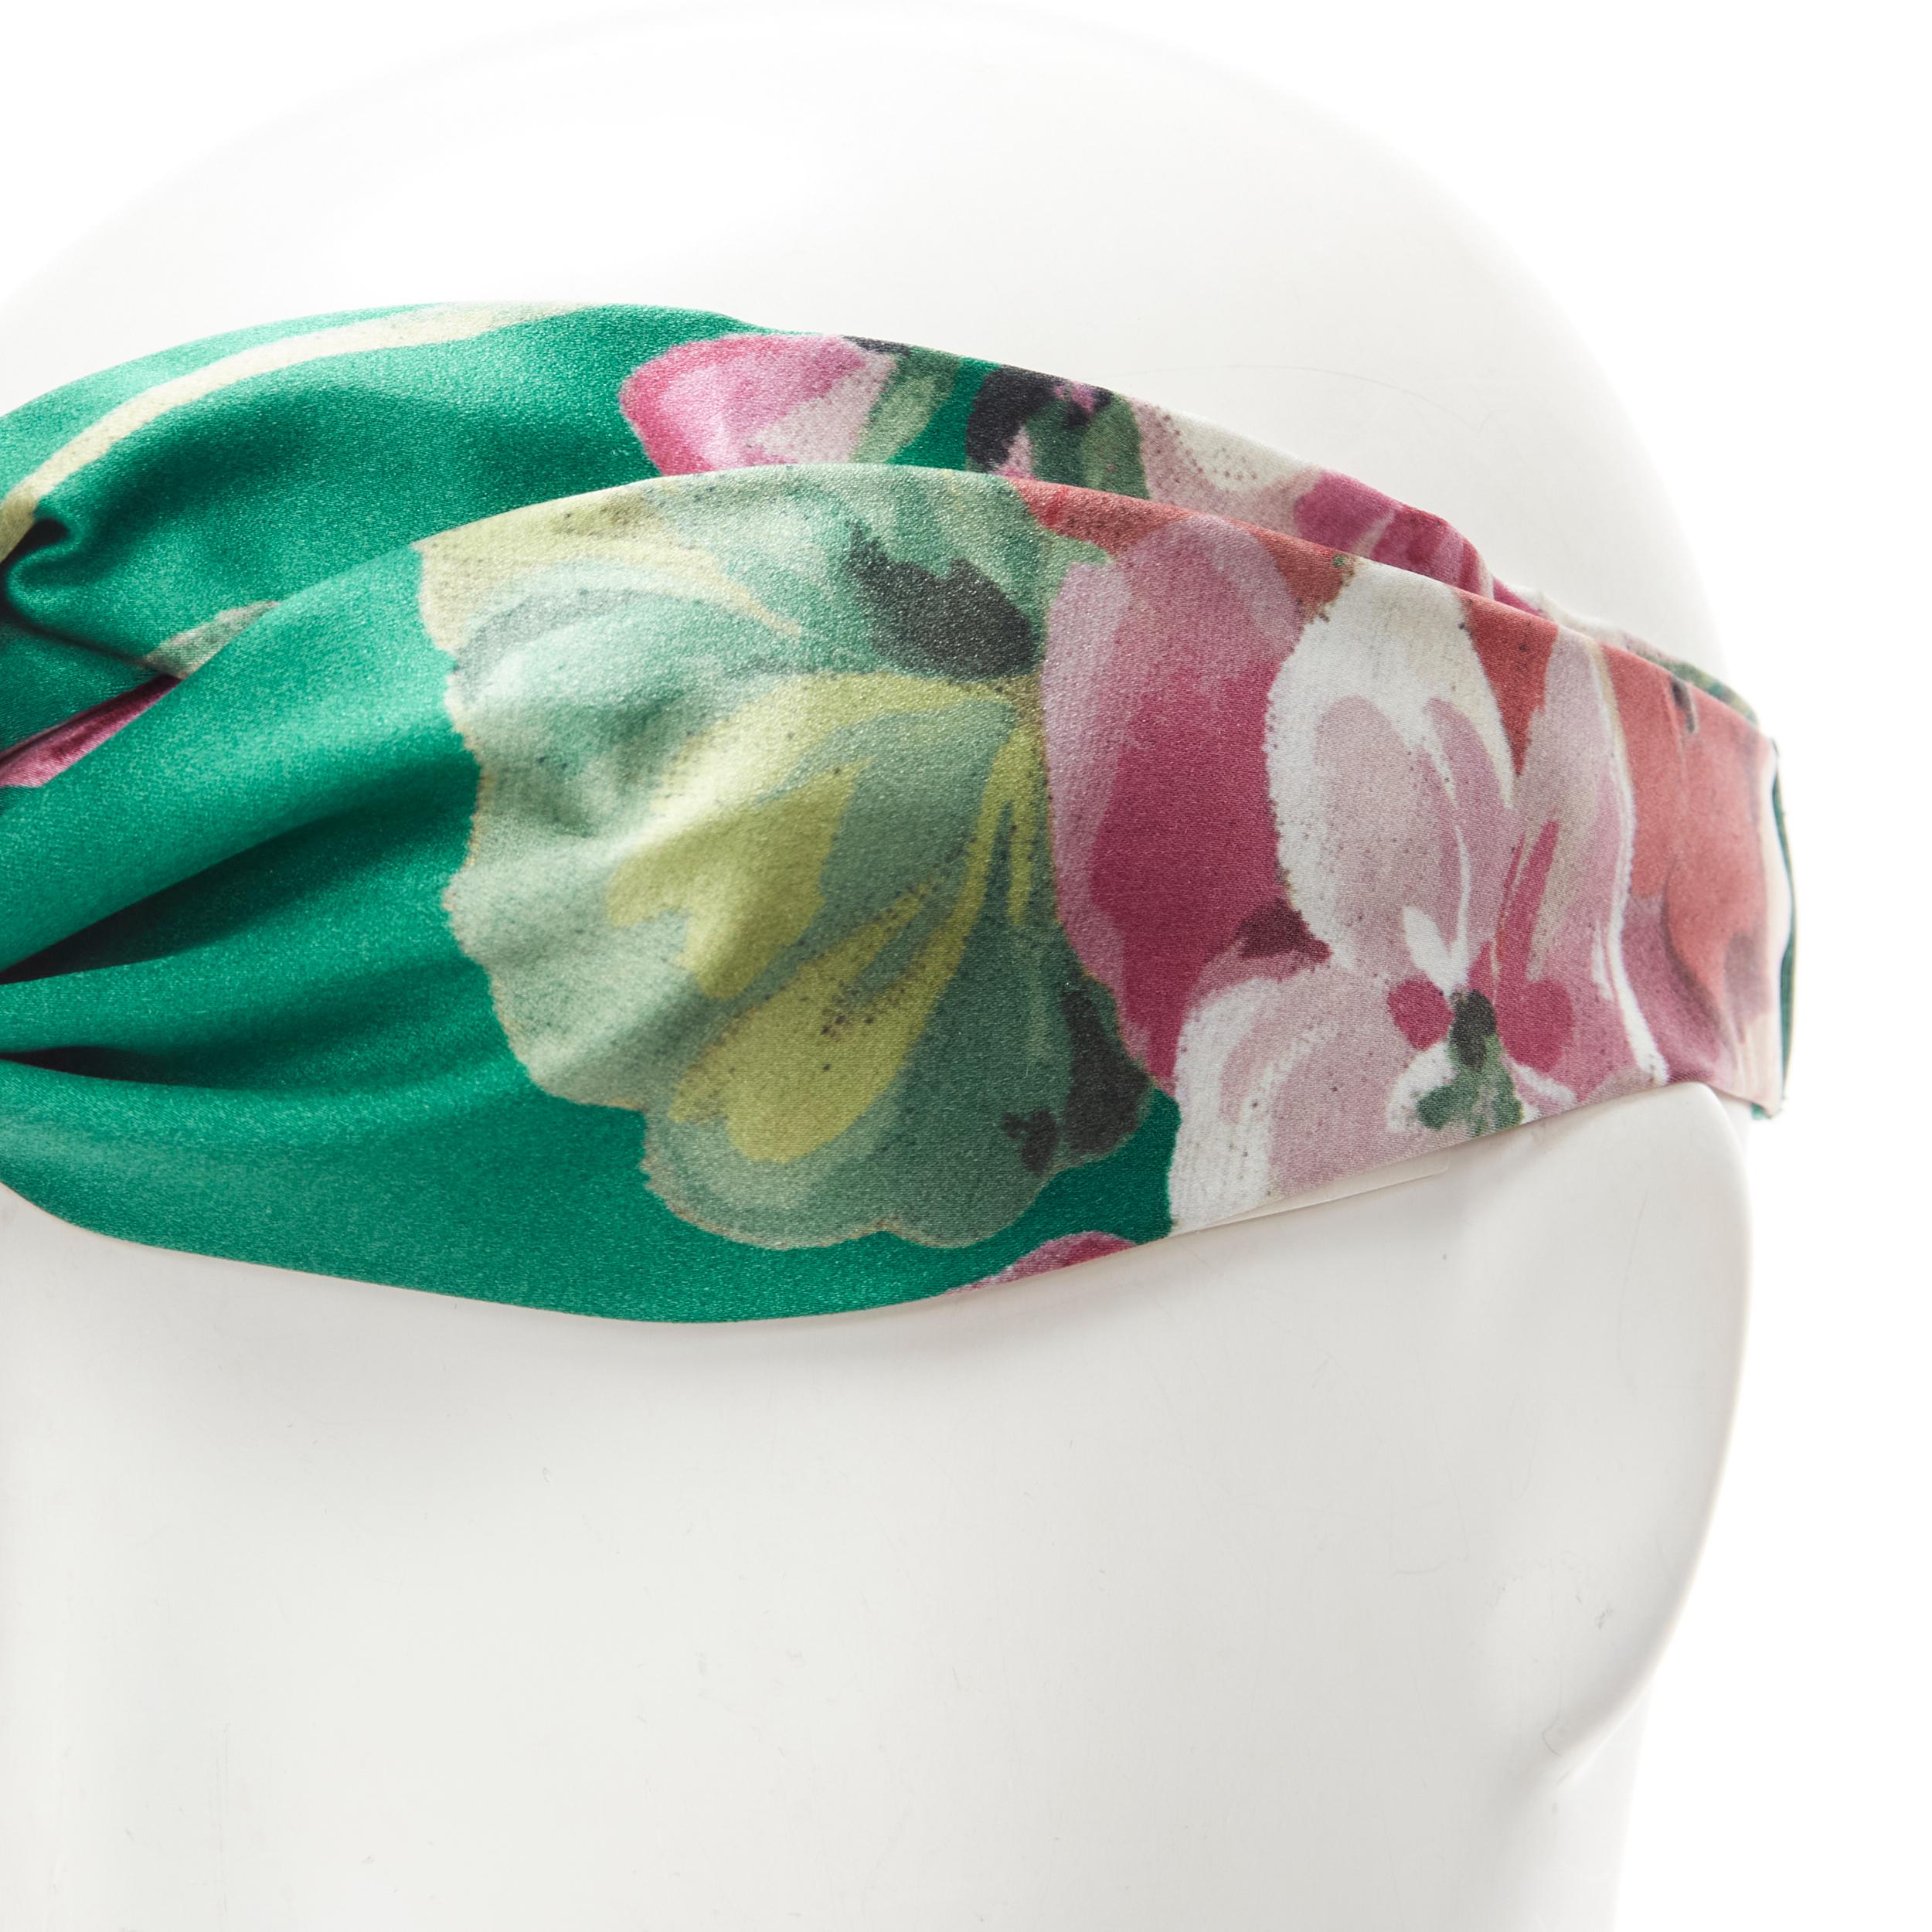 Women's new GUCCI Blooms 100% silk green pink blossom print silk knit turban head scarf